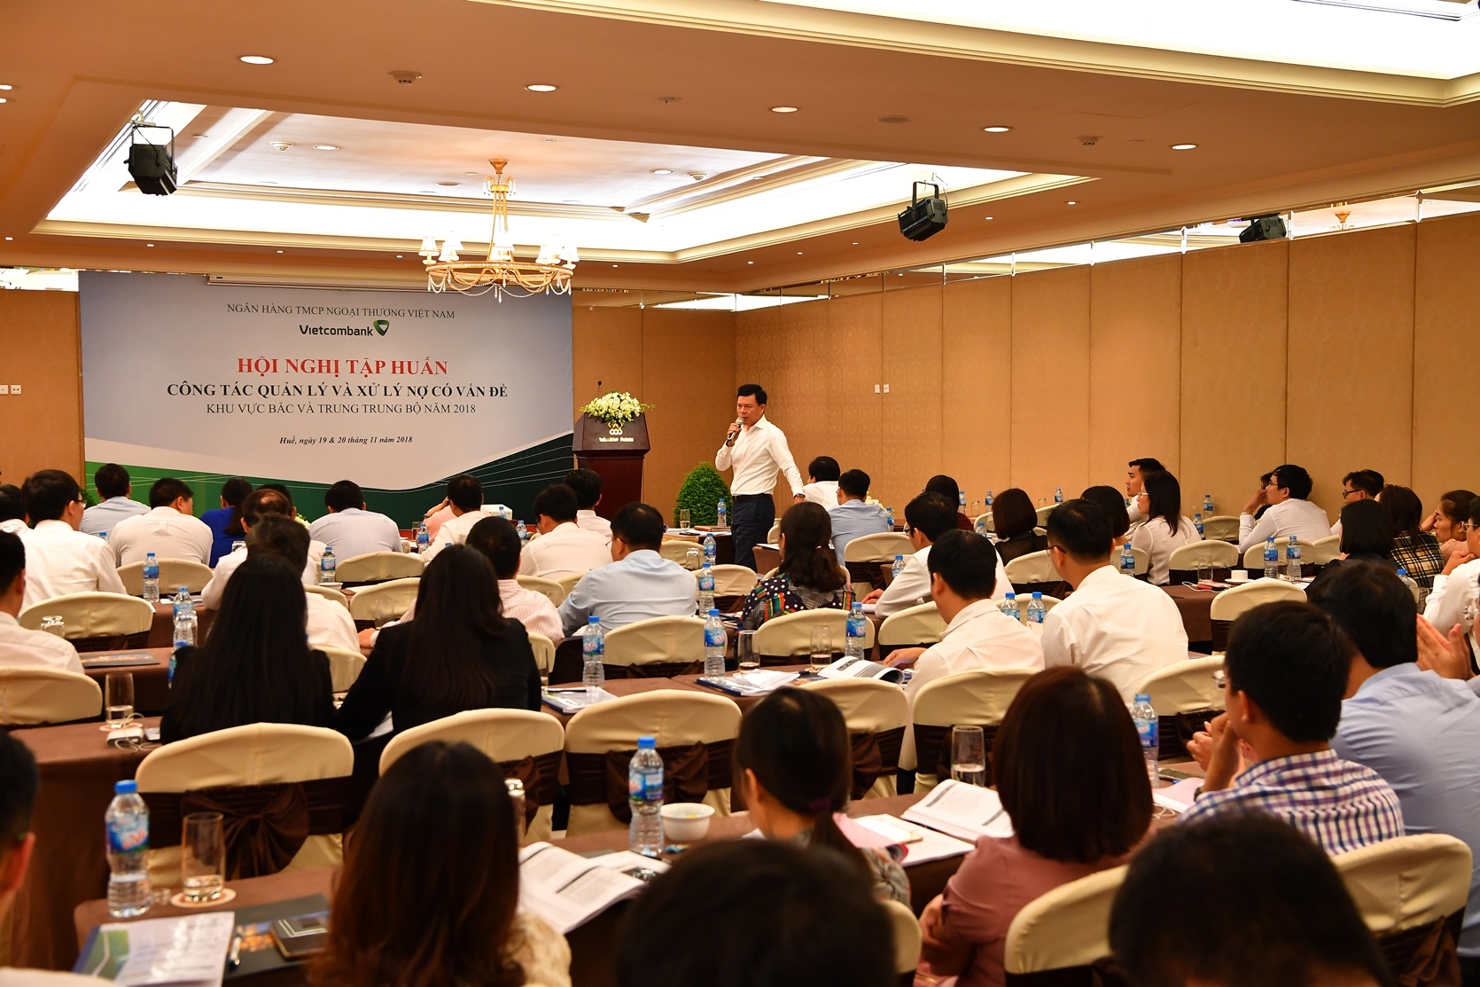 TS. Phạm Mạnh Thắng – Phó Tổng Giám đốc Vietcombank phát biểu tại Hội thảo tập huấn công tác quản lý và xử lý nợ có vấn đề dành của Vietcombank.